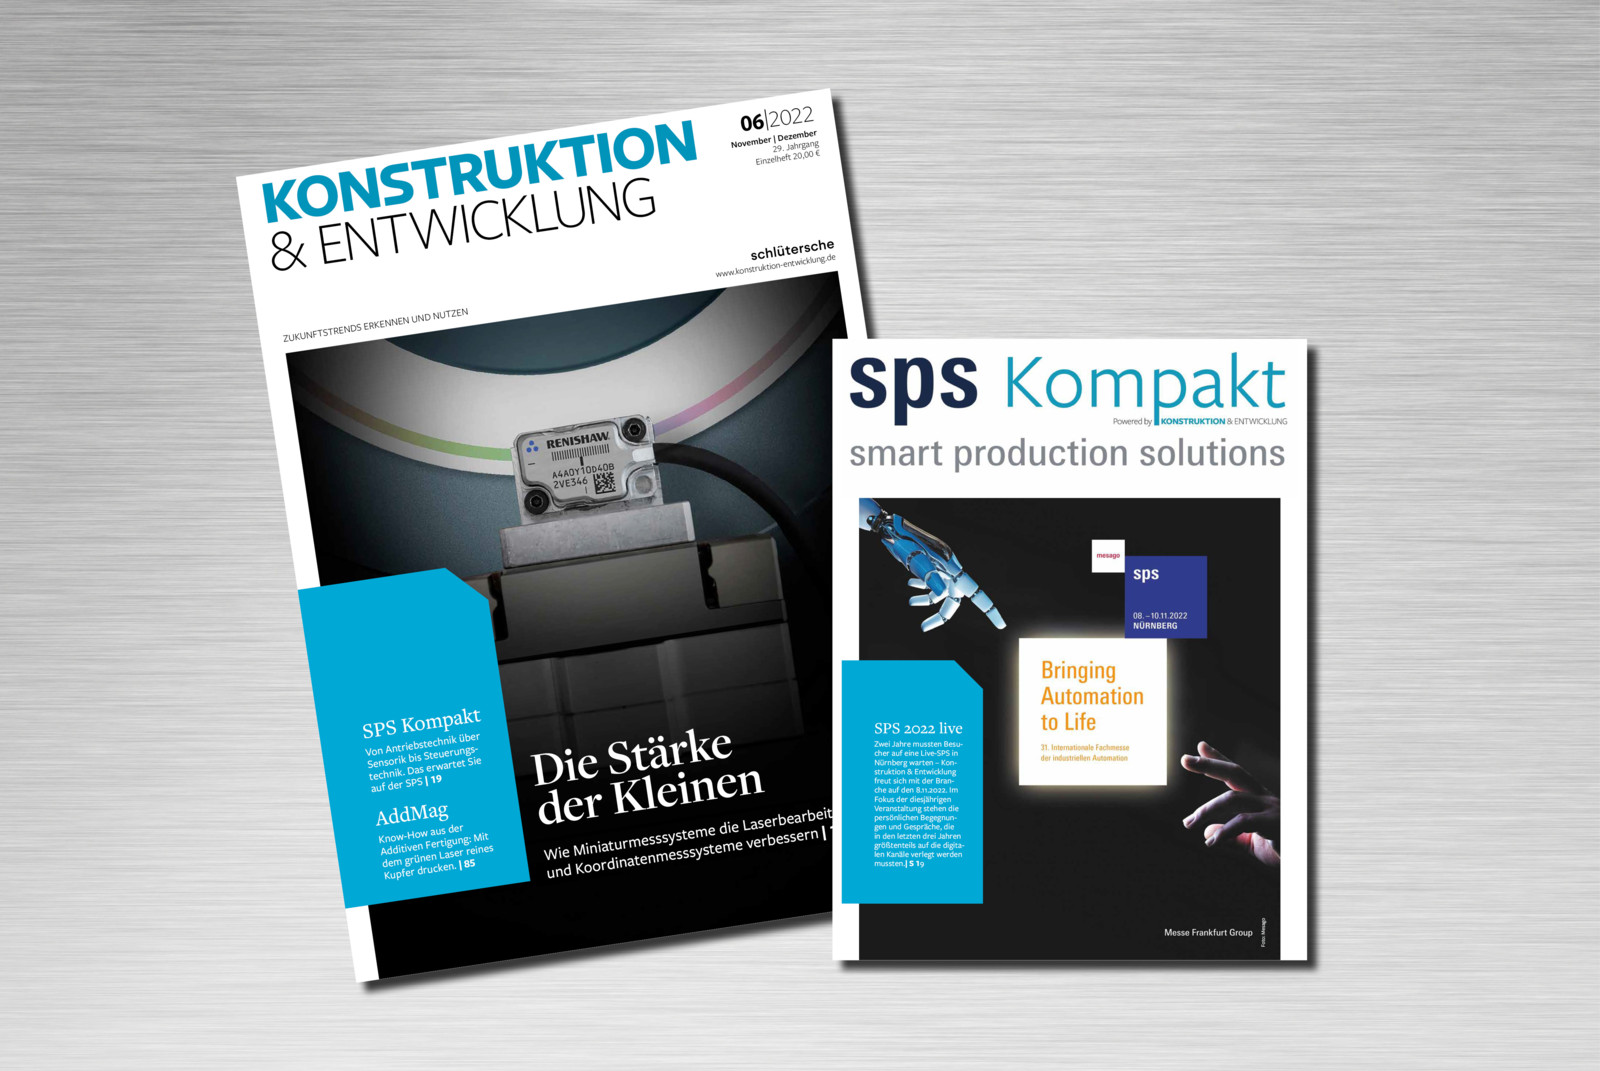 Am 8. November ist es soweit – die Branche trifft sich in Nürnberg. SPS KOMPAKT informiert, traditionell, bereits vorab über die Highlights. 